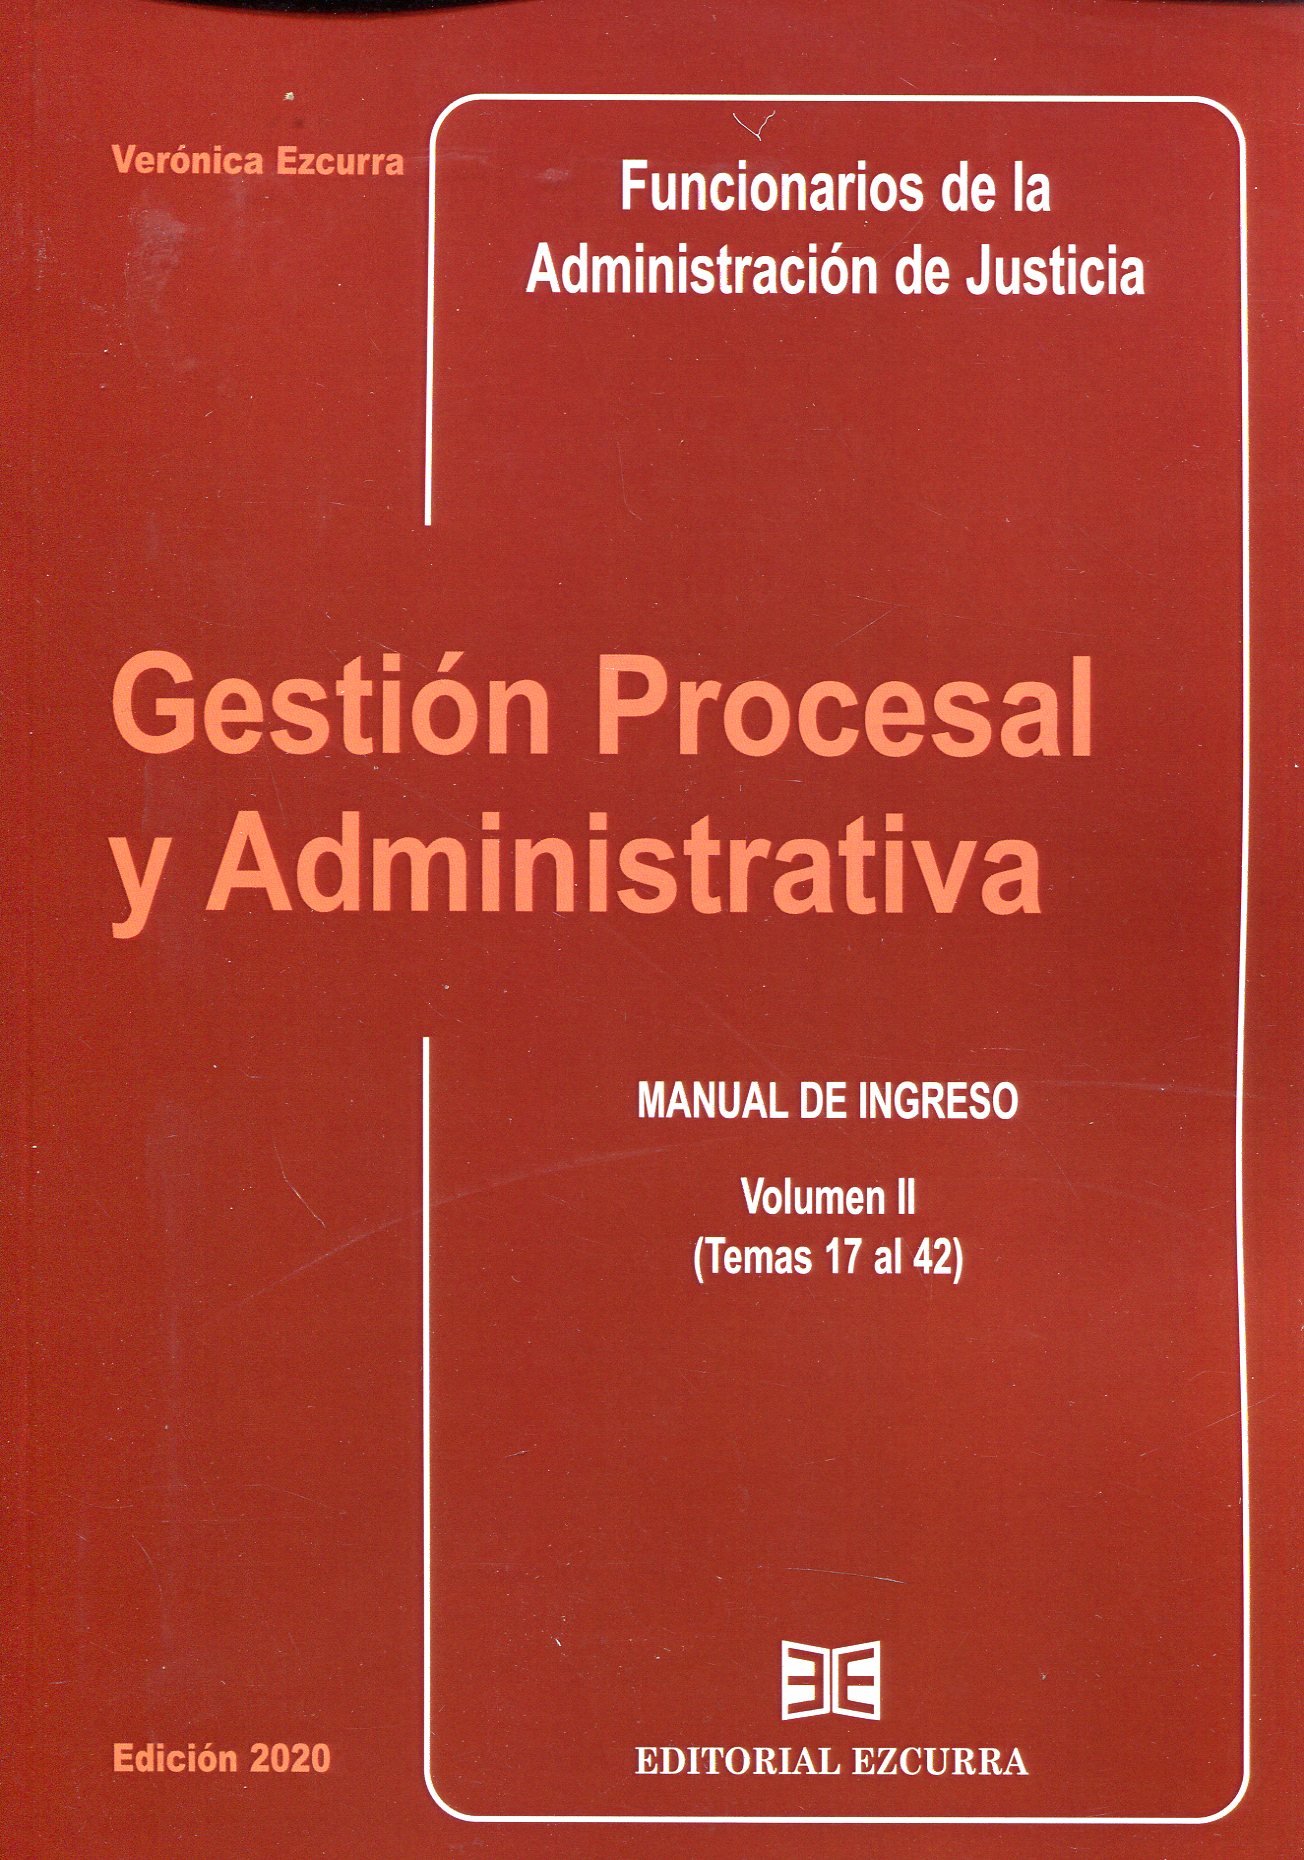 Gestión procesal y administrativa para los Funcionarios de la Administración de Justicia